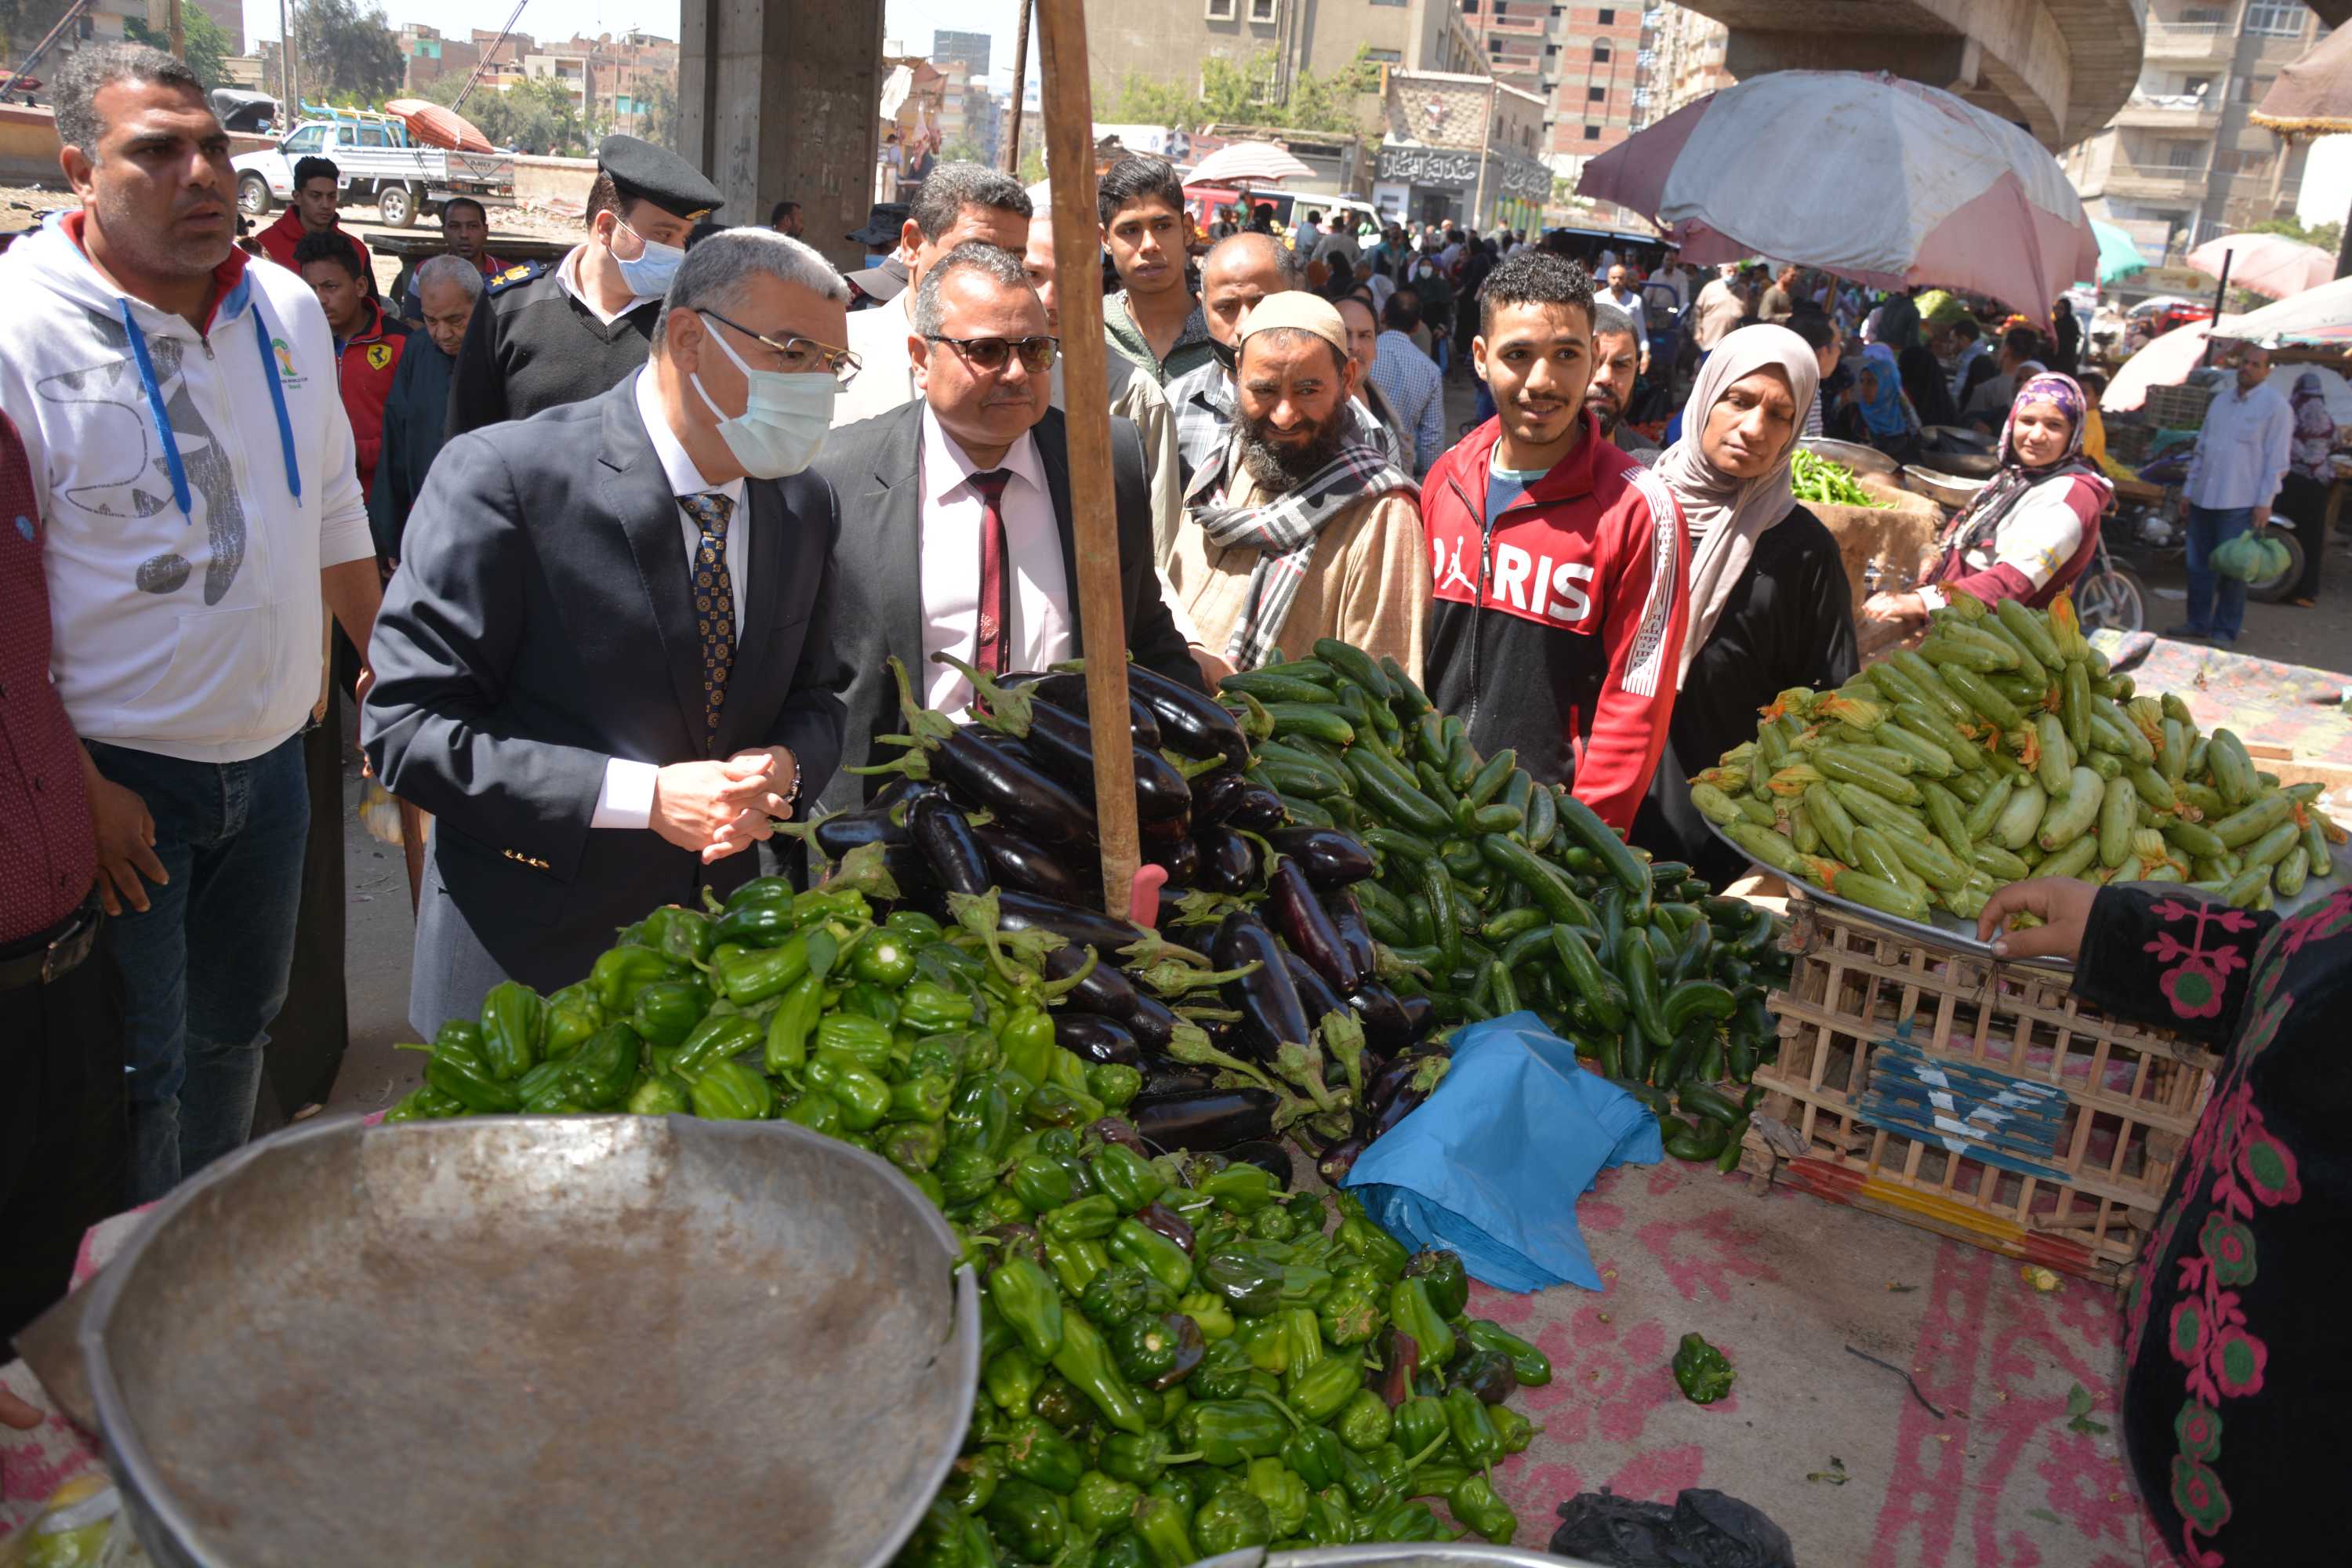 محافظ المنيا يتفقد موقع سوق الحبشي لتجهيز شوادر لبيع الخضر والفواكه بأسعار مخفضة (1)